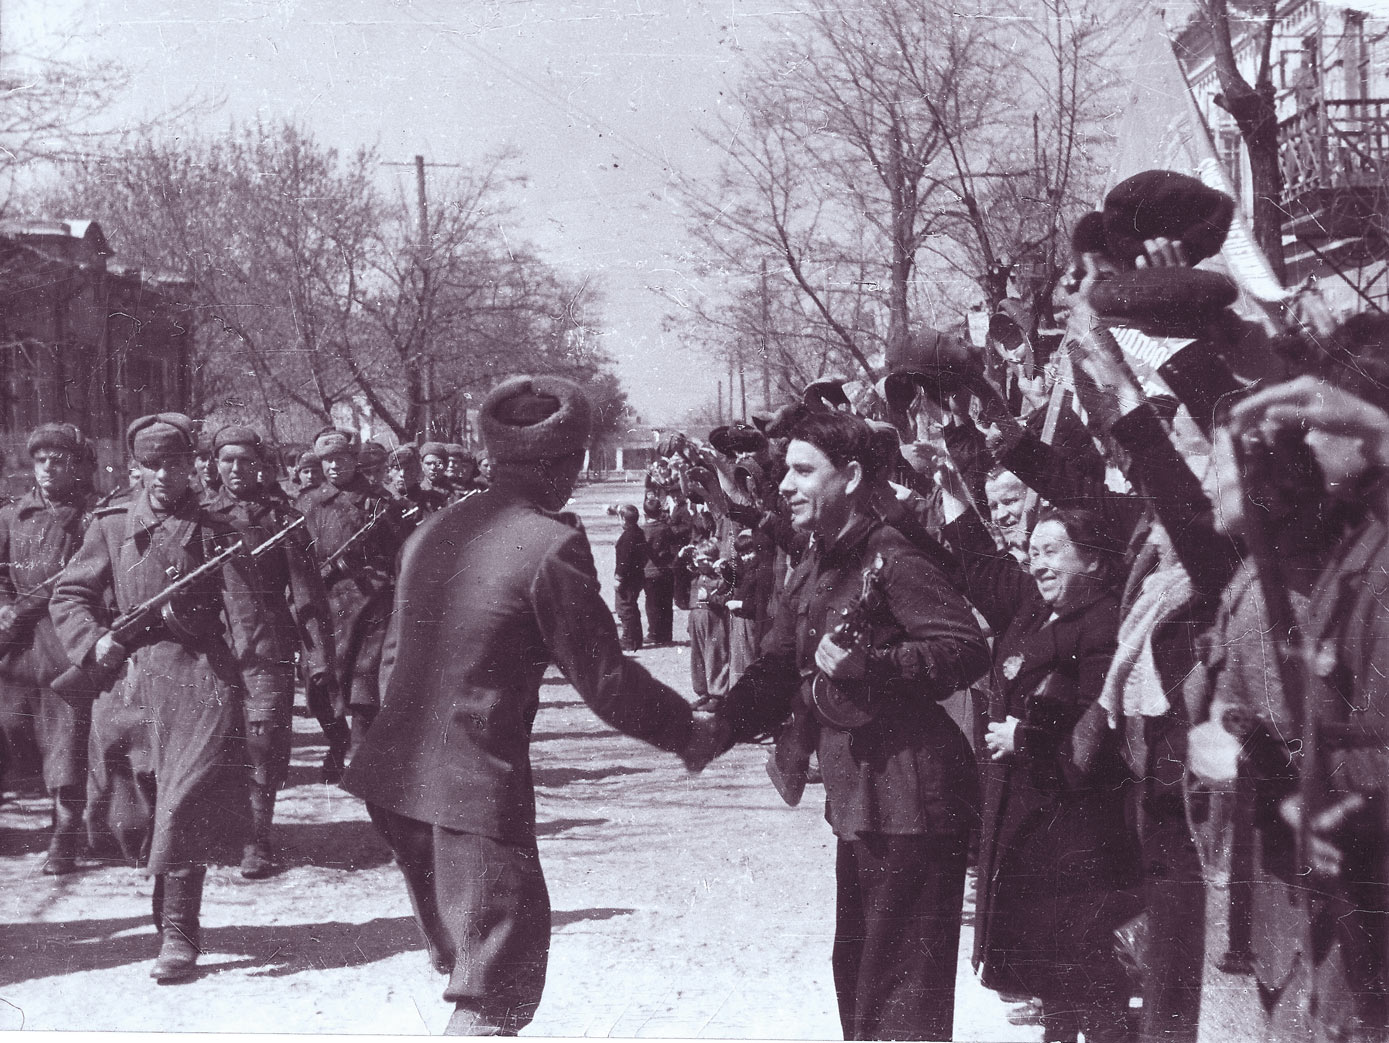 Фашистских захватчиков в 1944 году. 13.04.1944 Освобождение Евпатории. Освобождение Симферополя апрель 1944. Освобожденный город Евпатория в 1944 г..